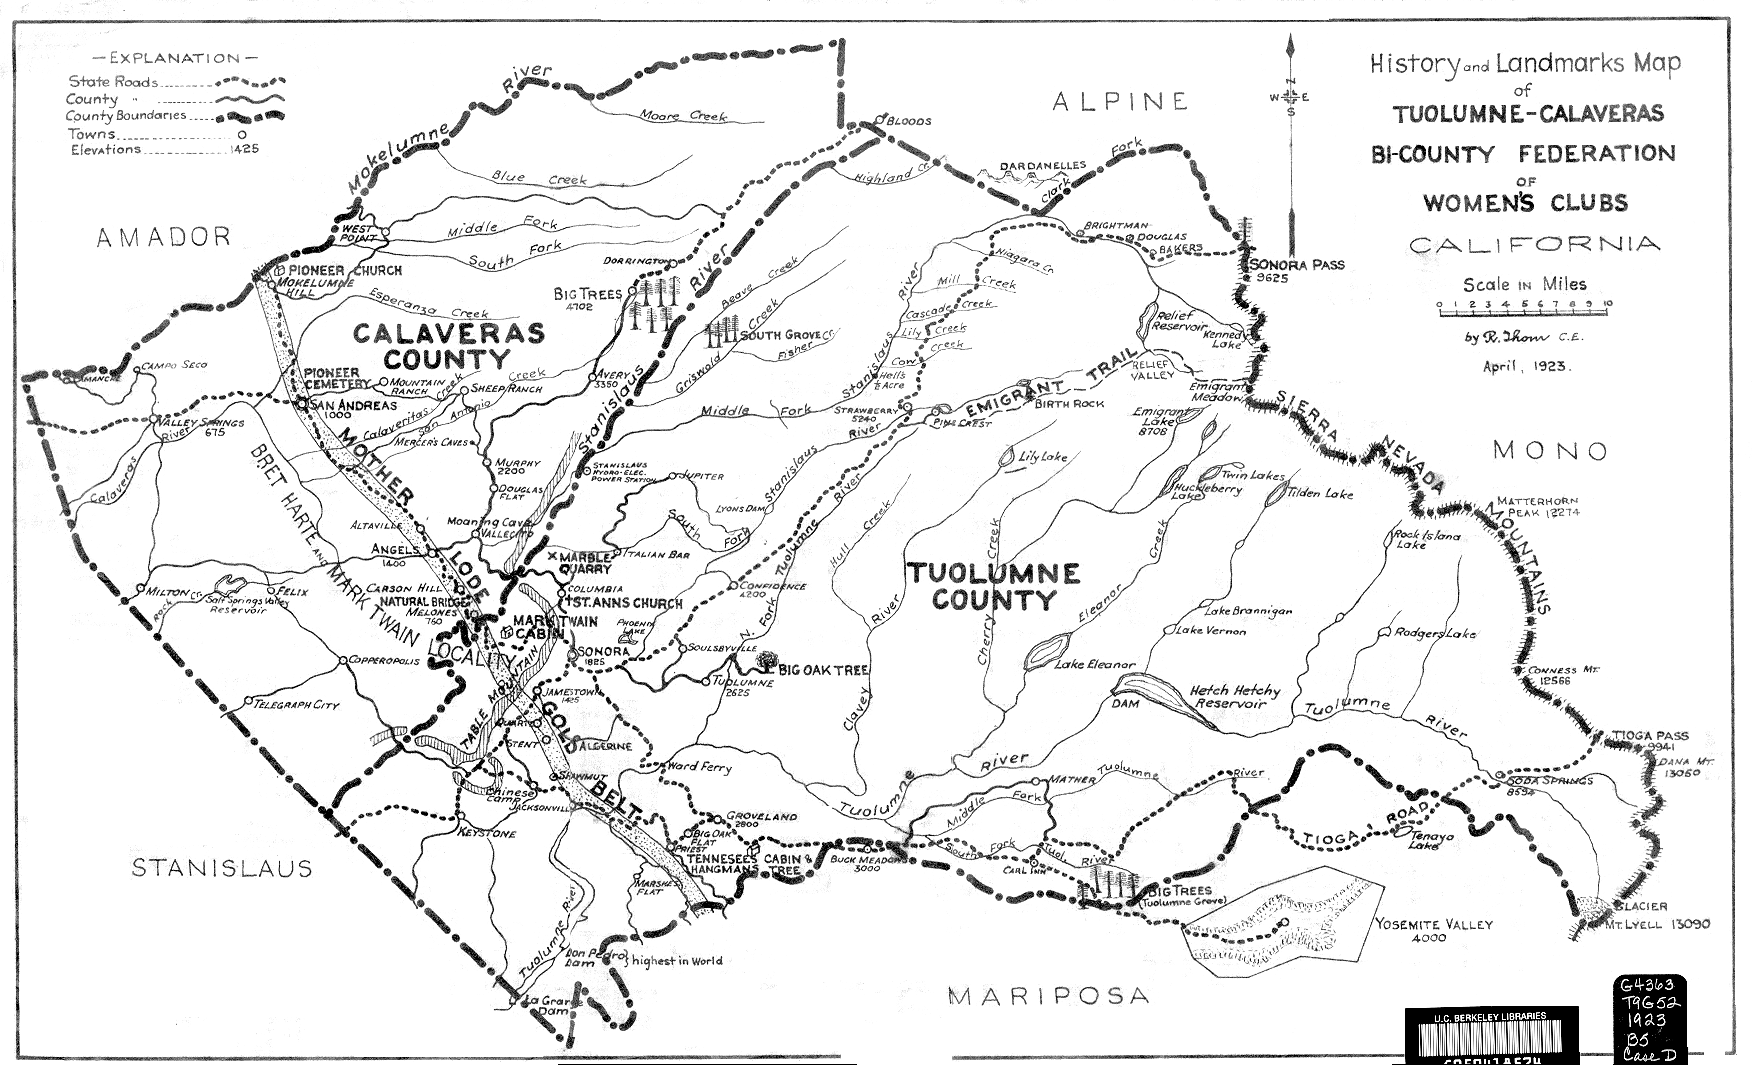 Tuolumne Calaveras Counties Map.